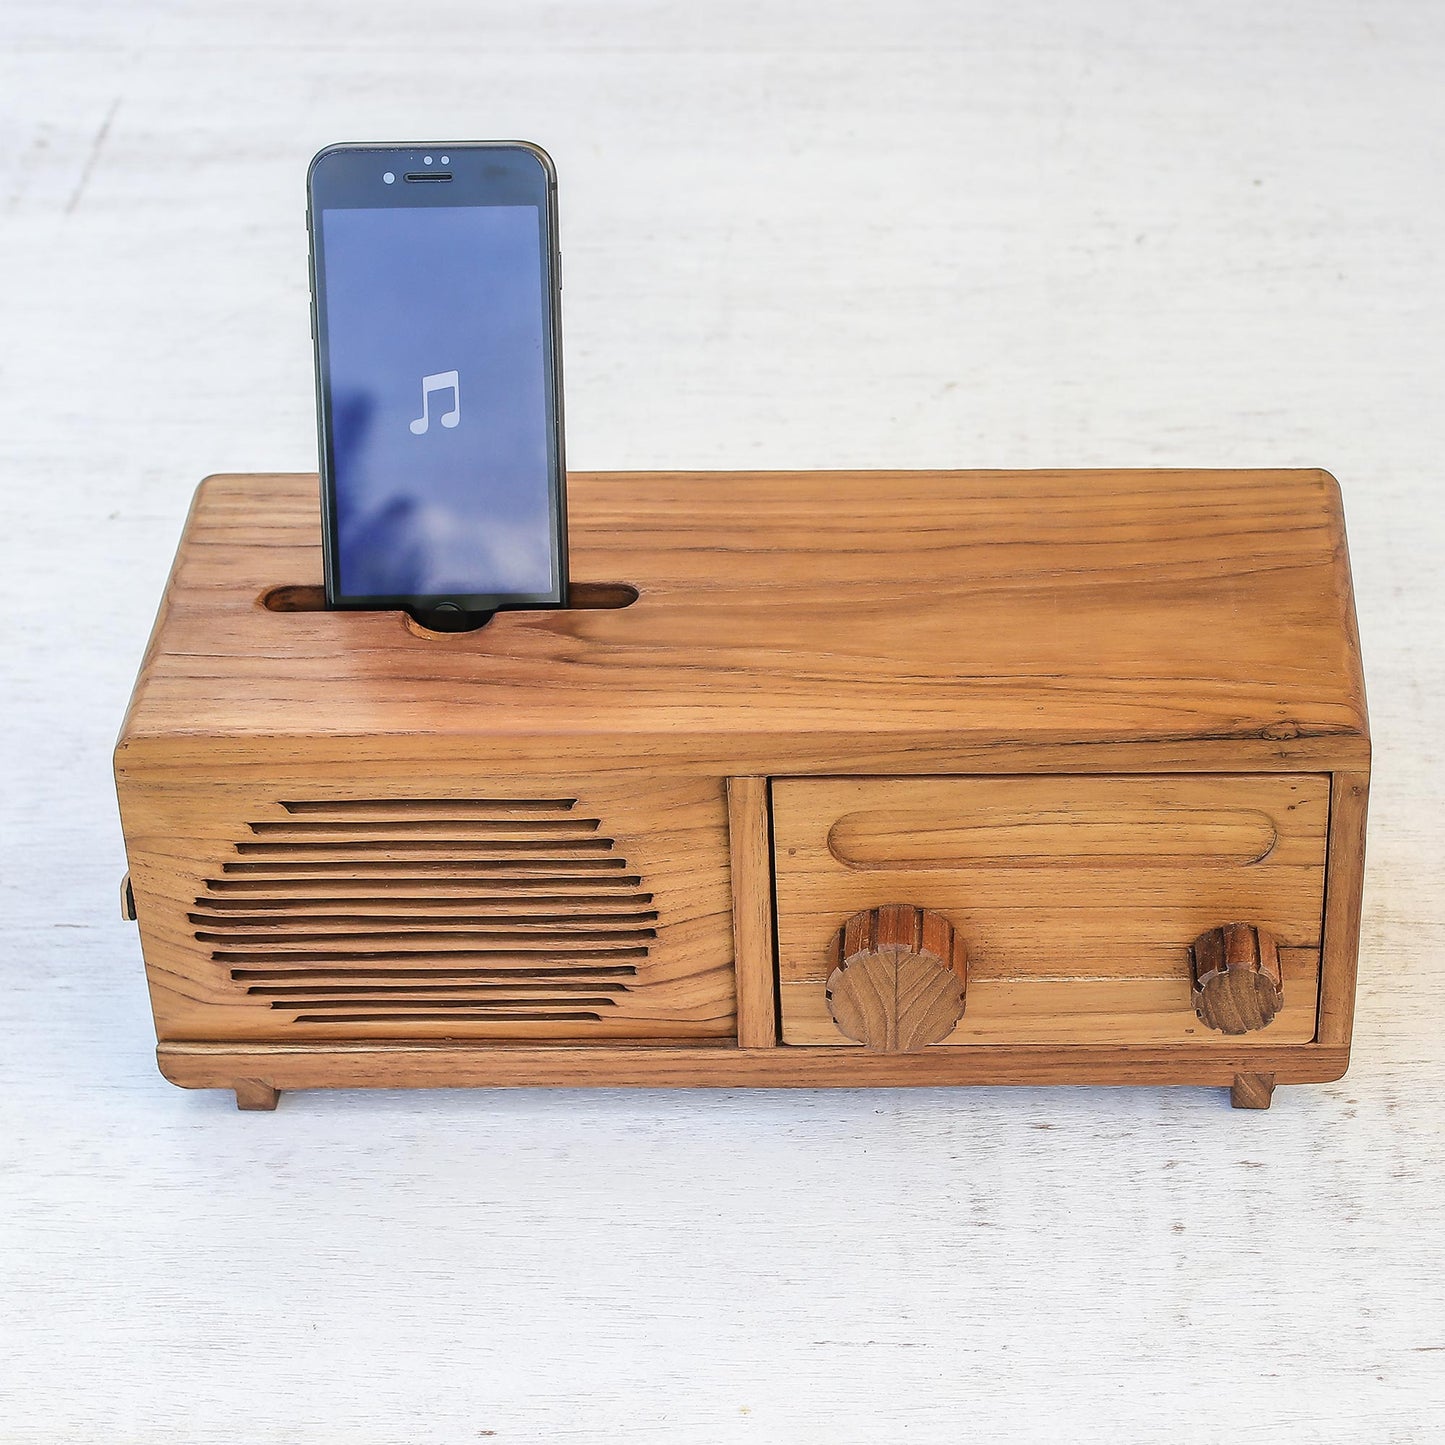 Vintage Radio Teak Wood Phone Speaker Shaped Like a Vintage Radio